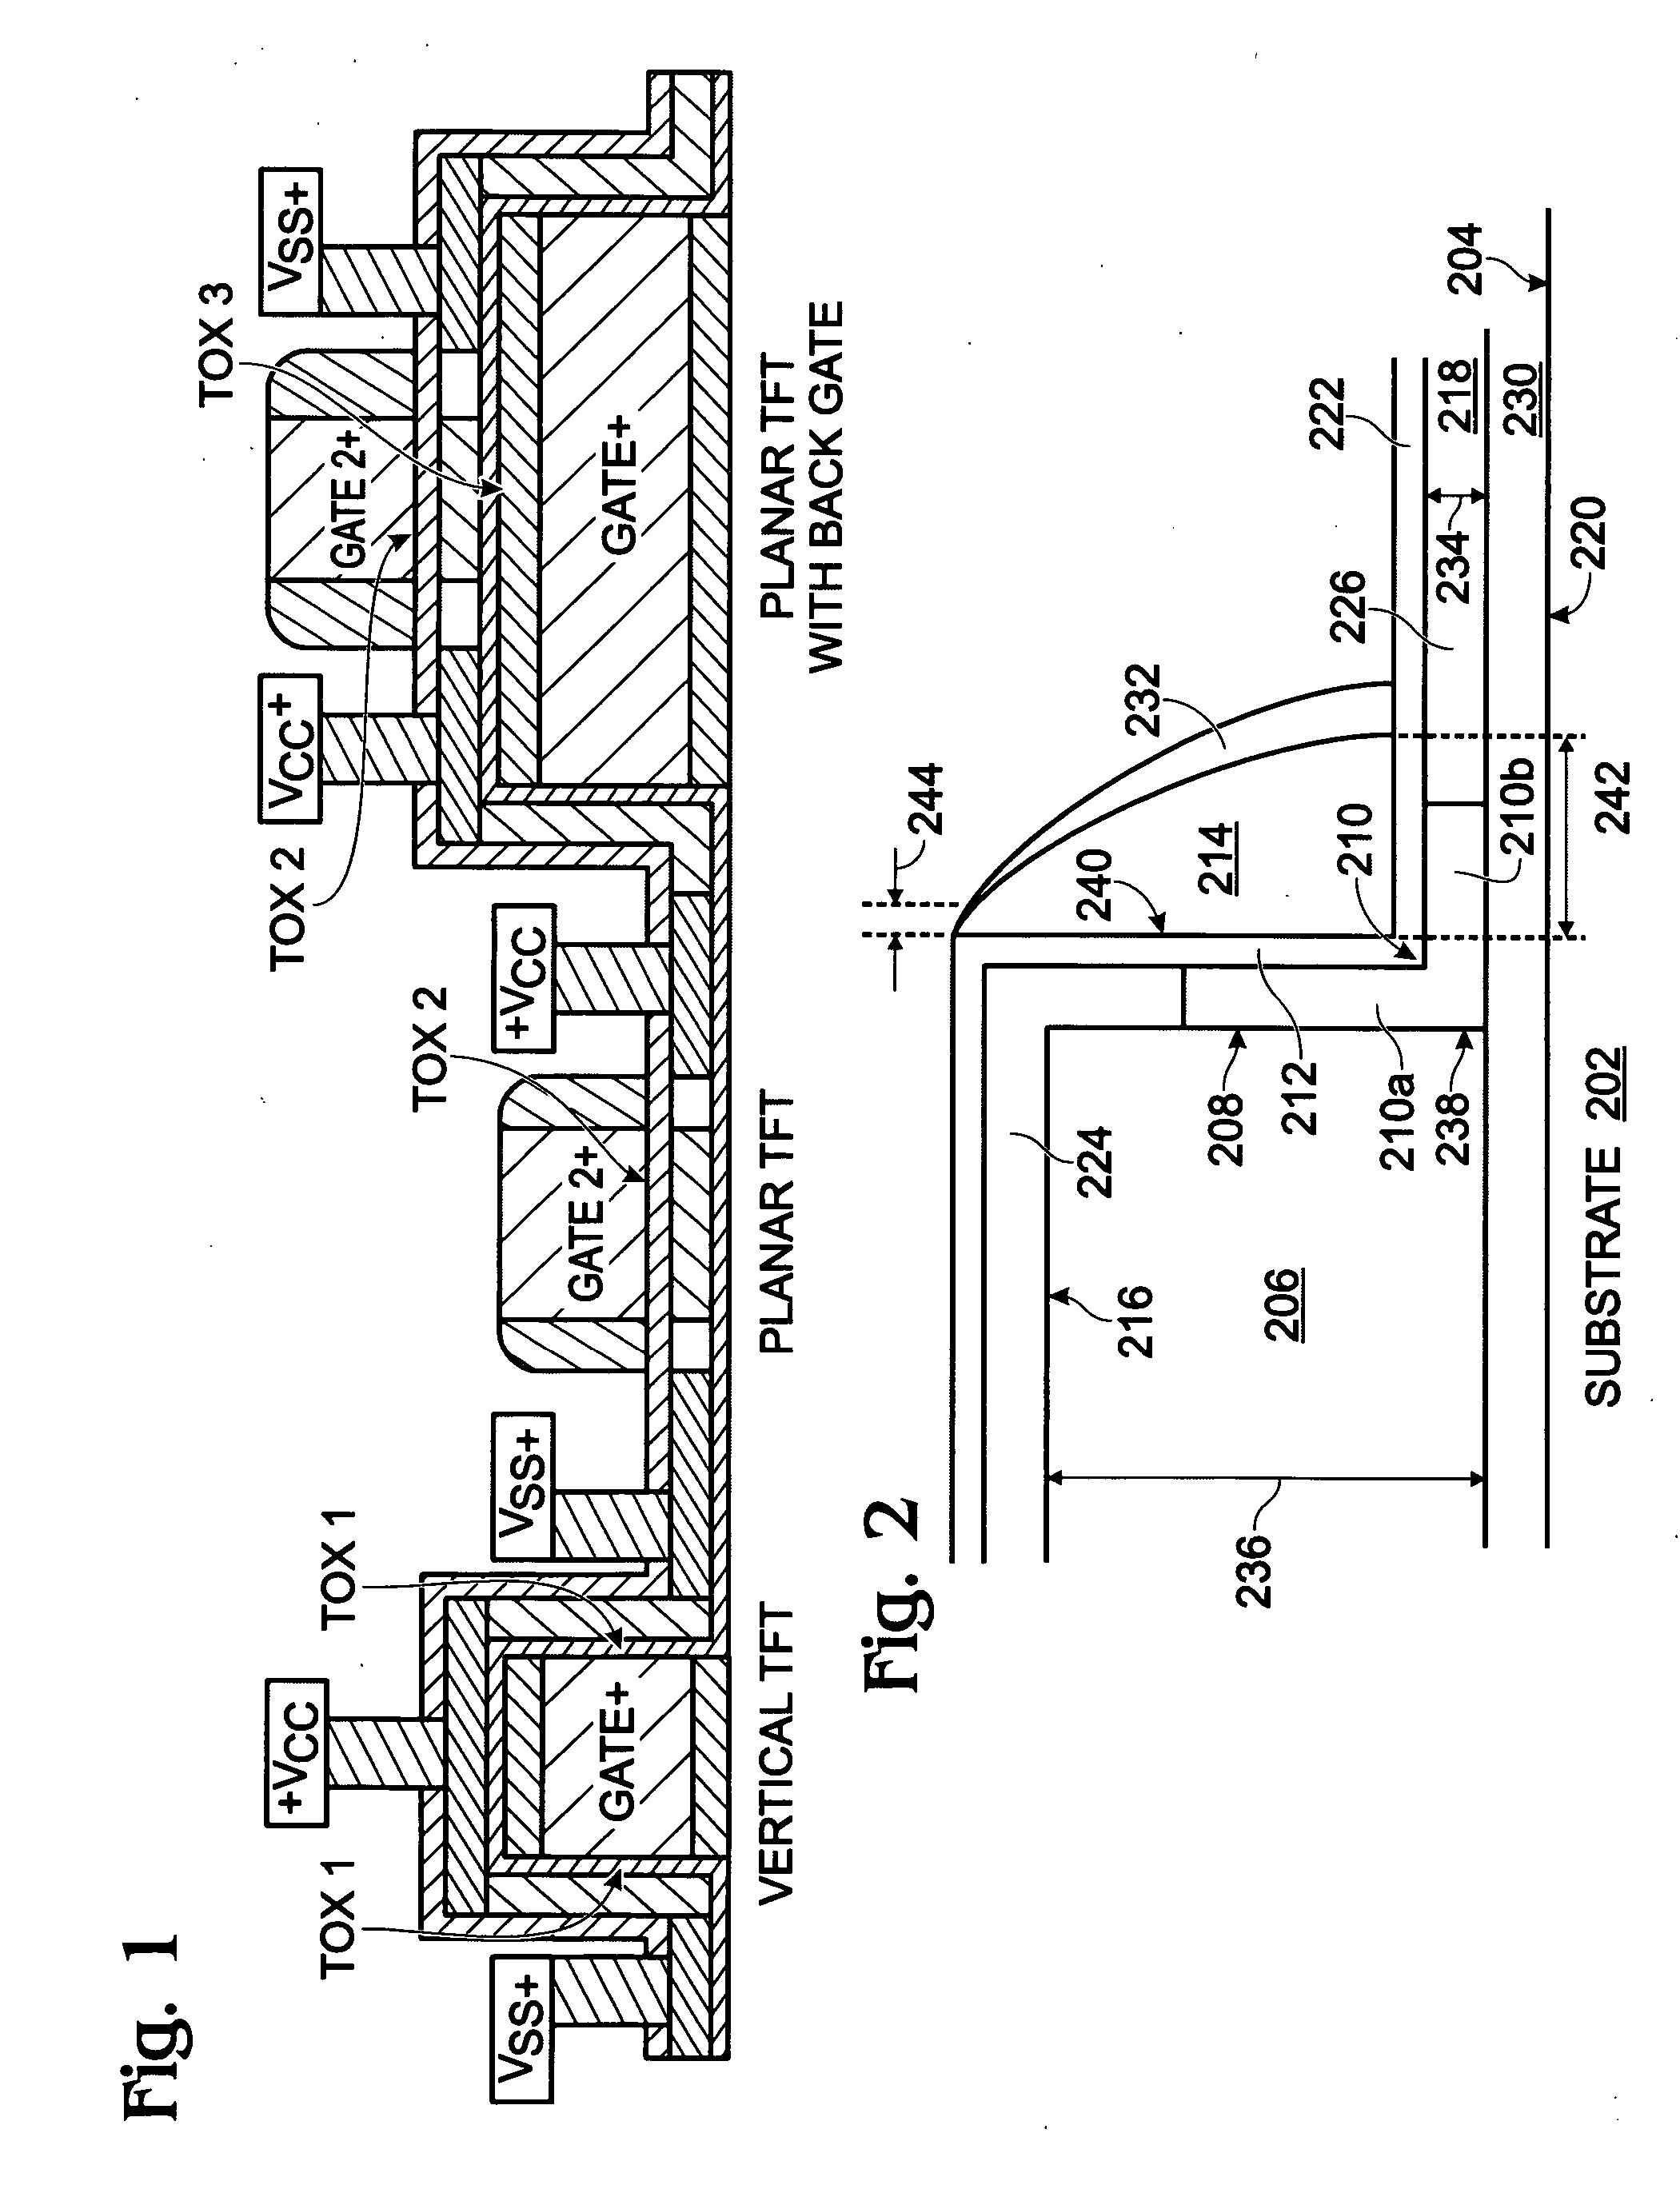 Sidewall gate thin-film transistor